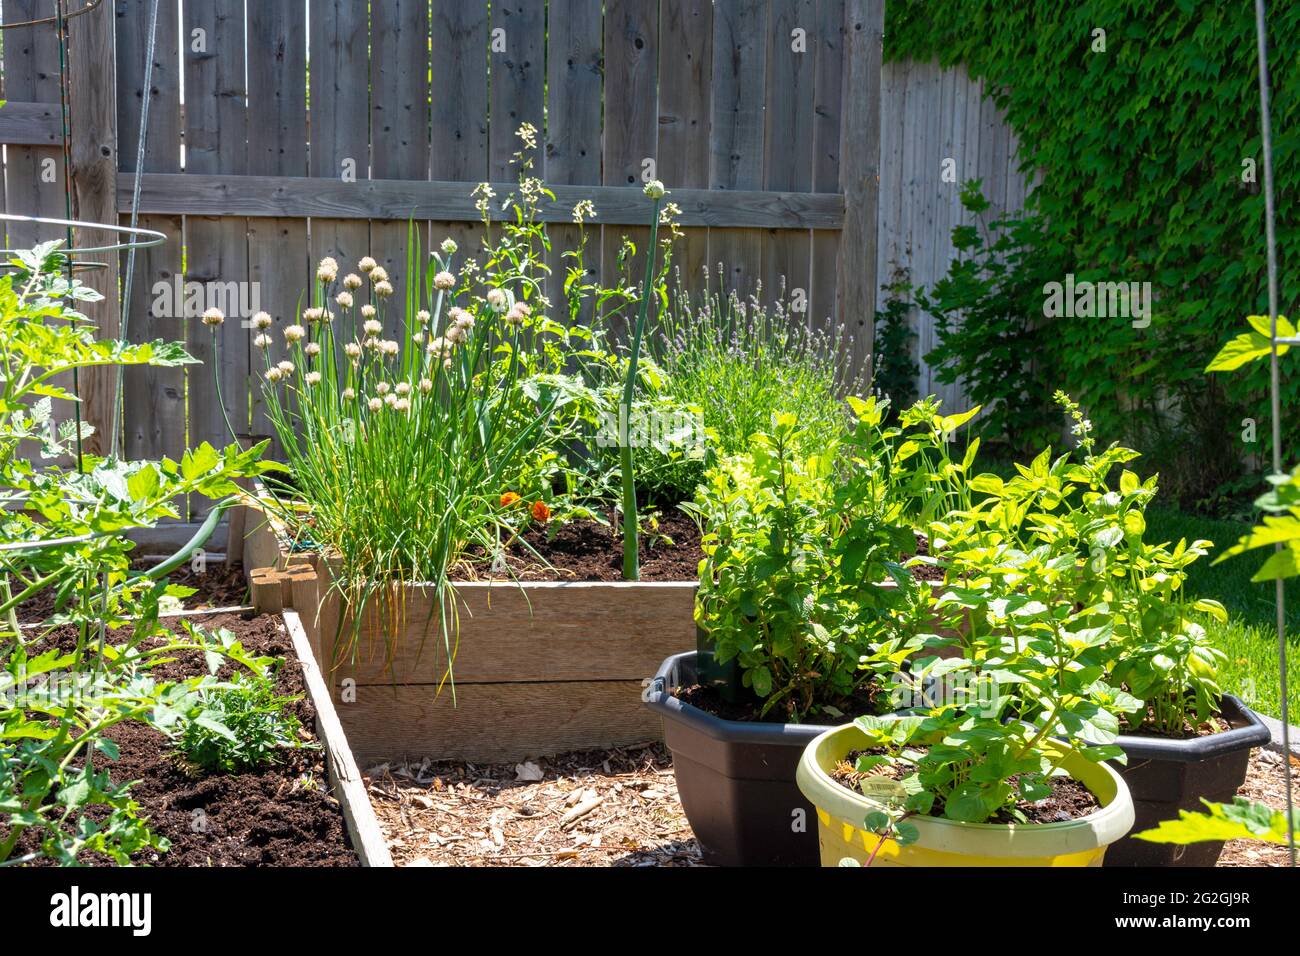 Ce petit jardin urbain de cour contient des lits de plantation carrés surélevés pour cultiver des légumes et des herbes tout au long de l'été. Banque D'Images